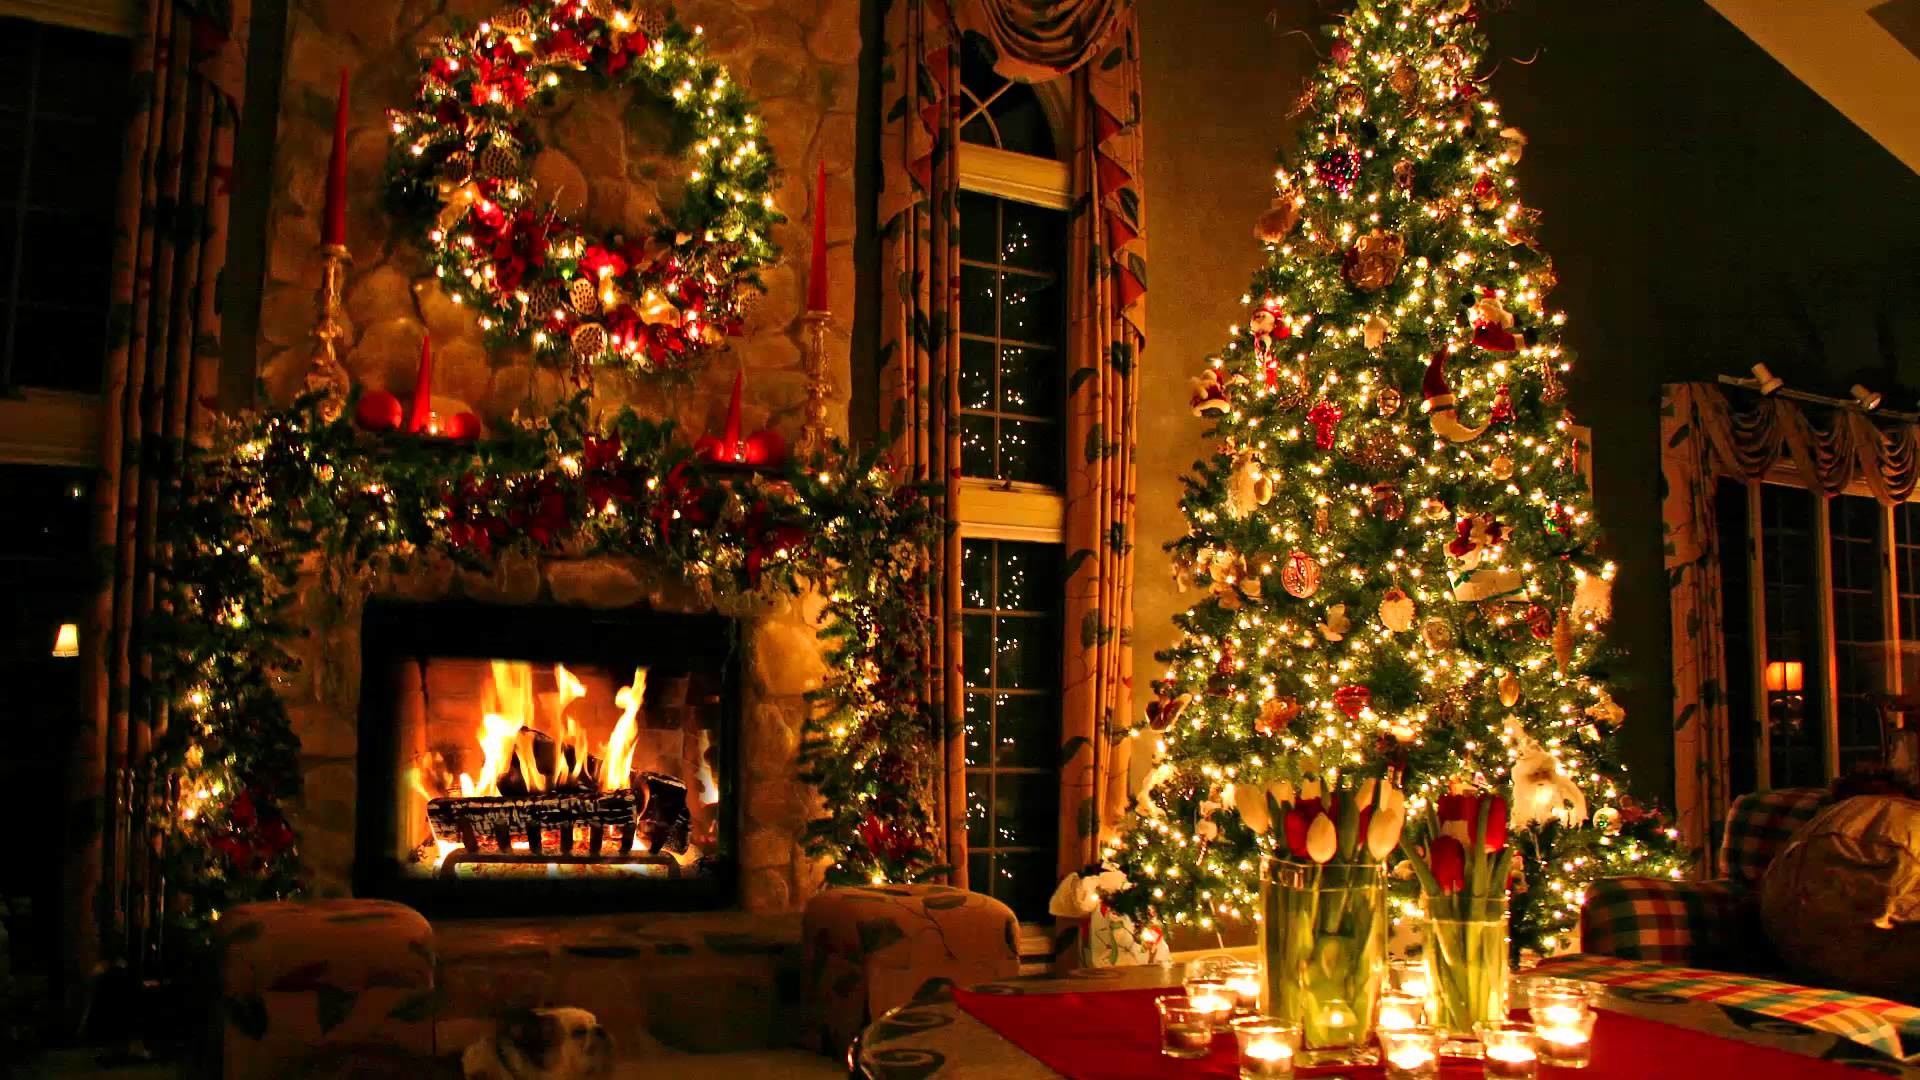 Hình nền Giáng sinh cho màn hình desktop của bạn sẽ tạo ra một cảm giác rất ấm áp cho mùa lễ này. Hãy trang trí màn hình của bạn bằng những bức ảnh tuyệt đẹp và tận hưởng không khí yên bình của ngày lễ.